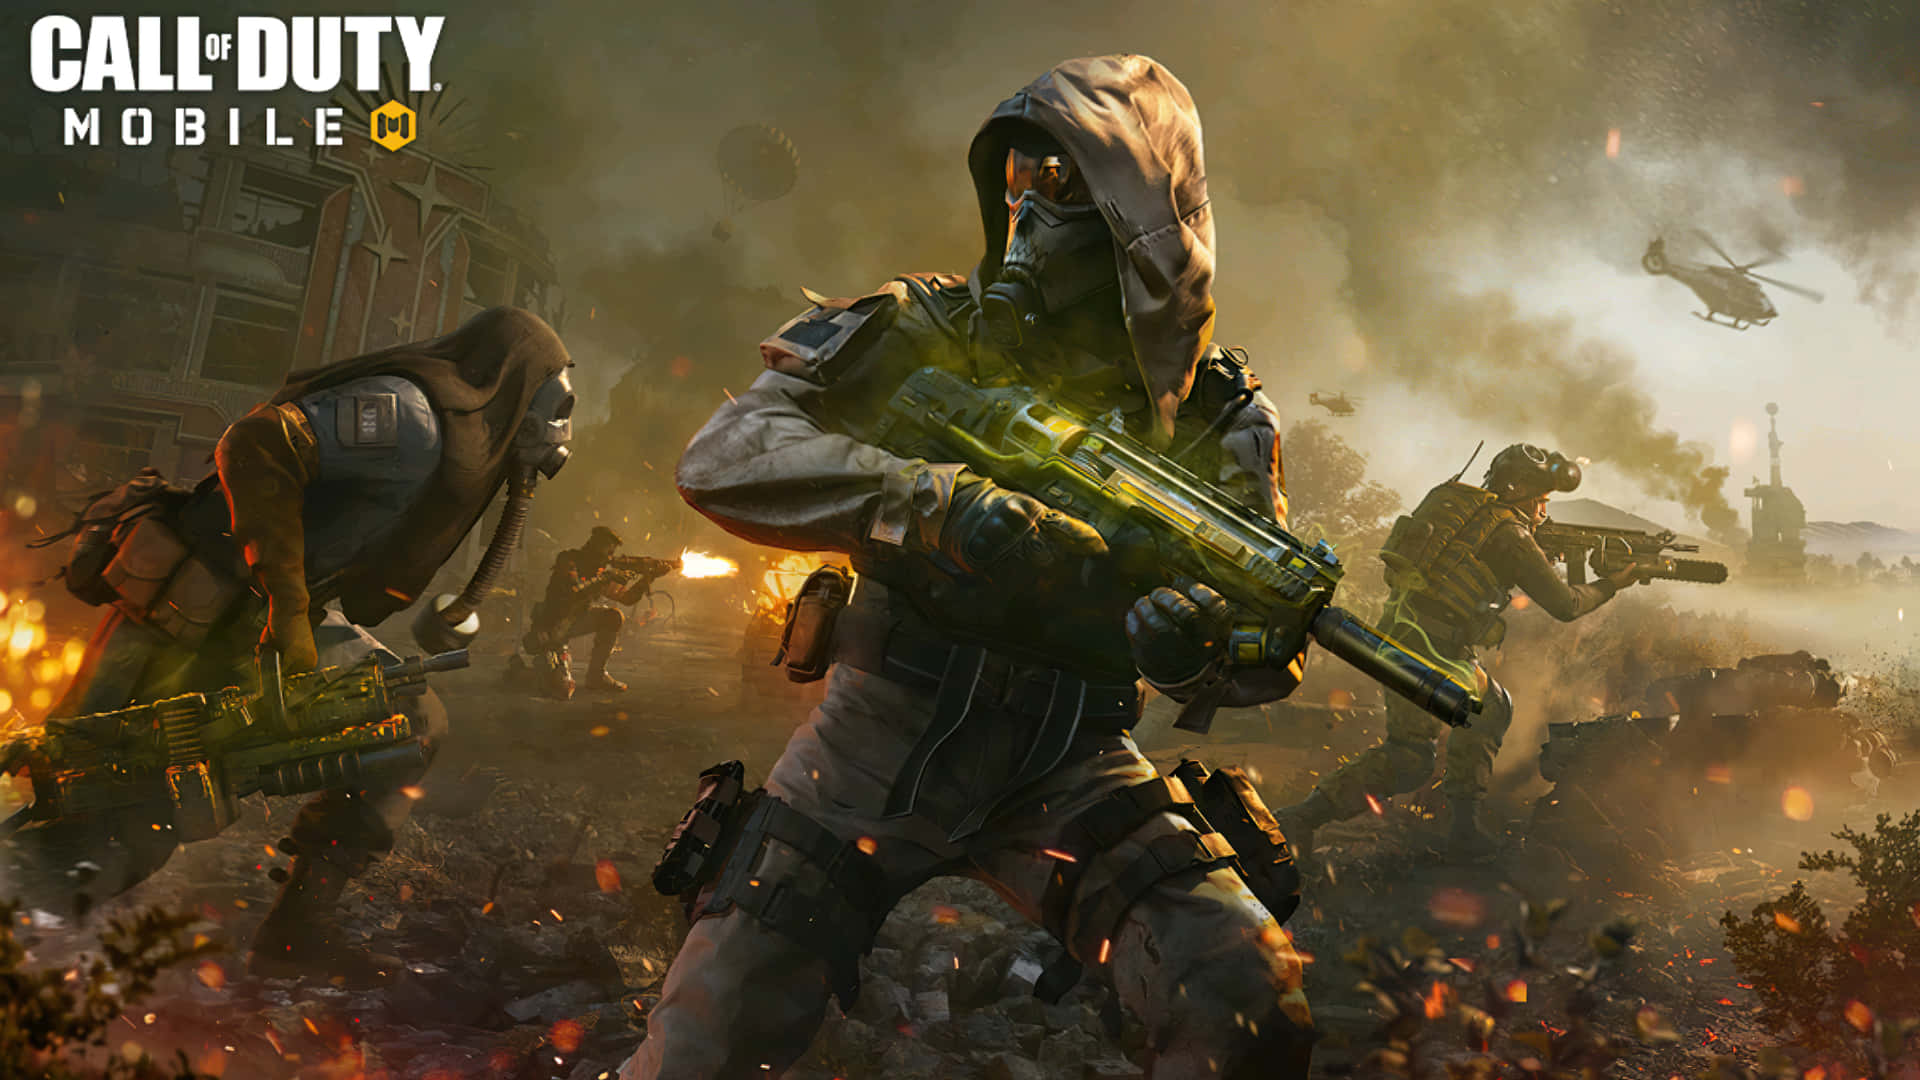 Oplev de spændende senssationer af Call Of Duty i storslået HD. Wallpaper